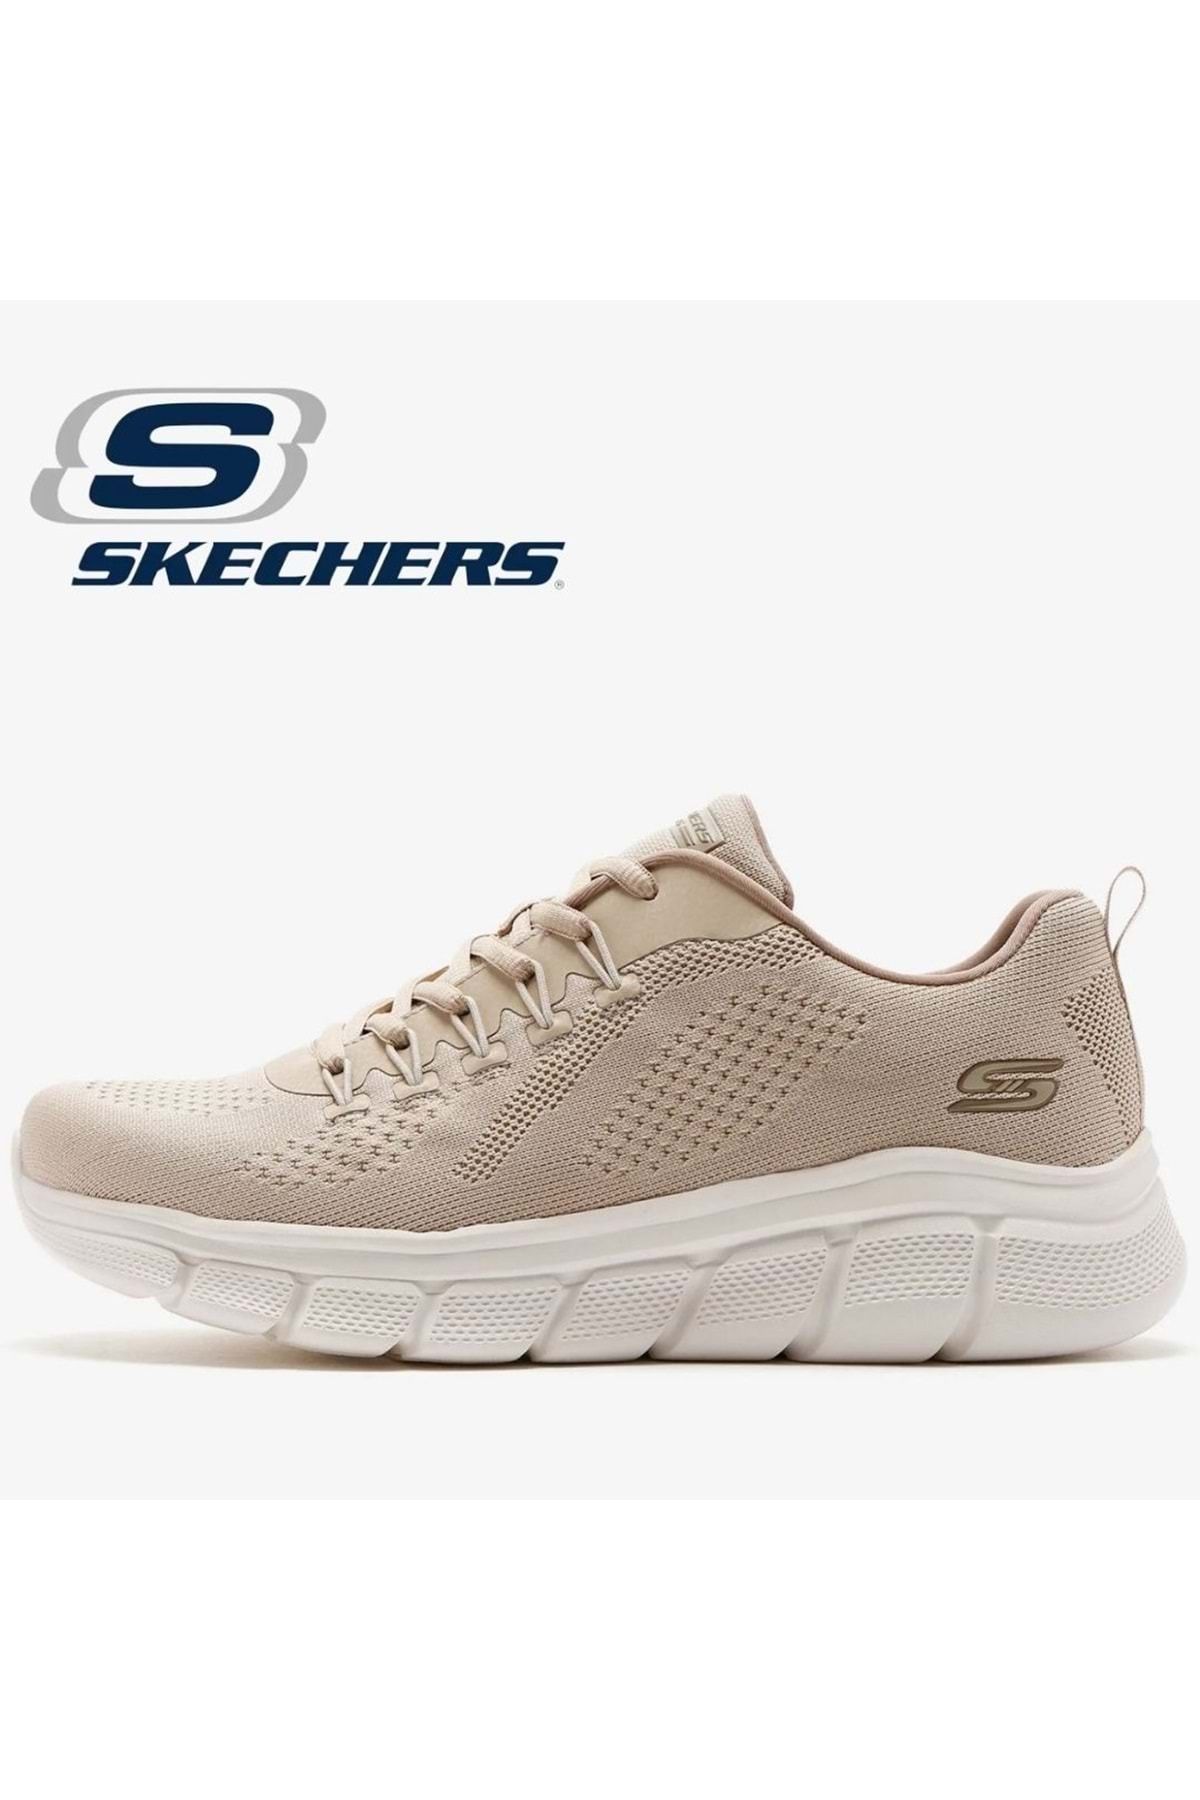 Skechers Bobs B-flex 118101 Erkek Spor Ayakkabı Bej